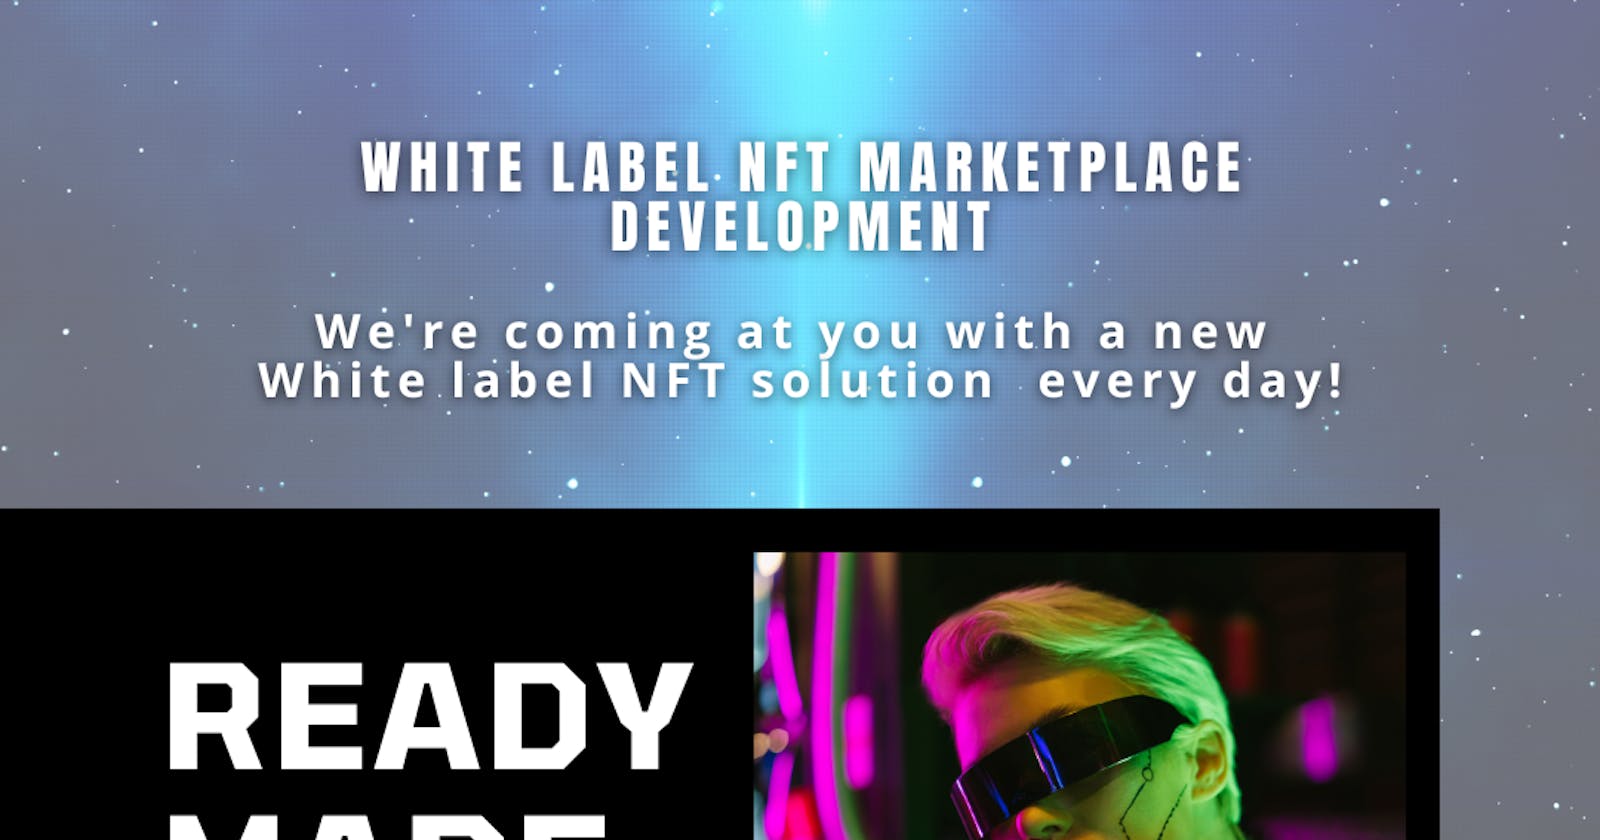 Future Trends in White Label NFT Marketplace Development